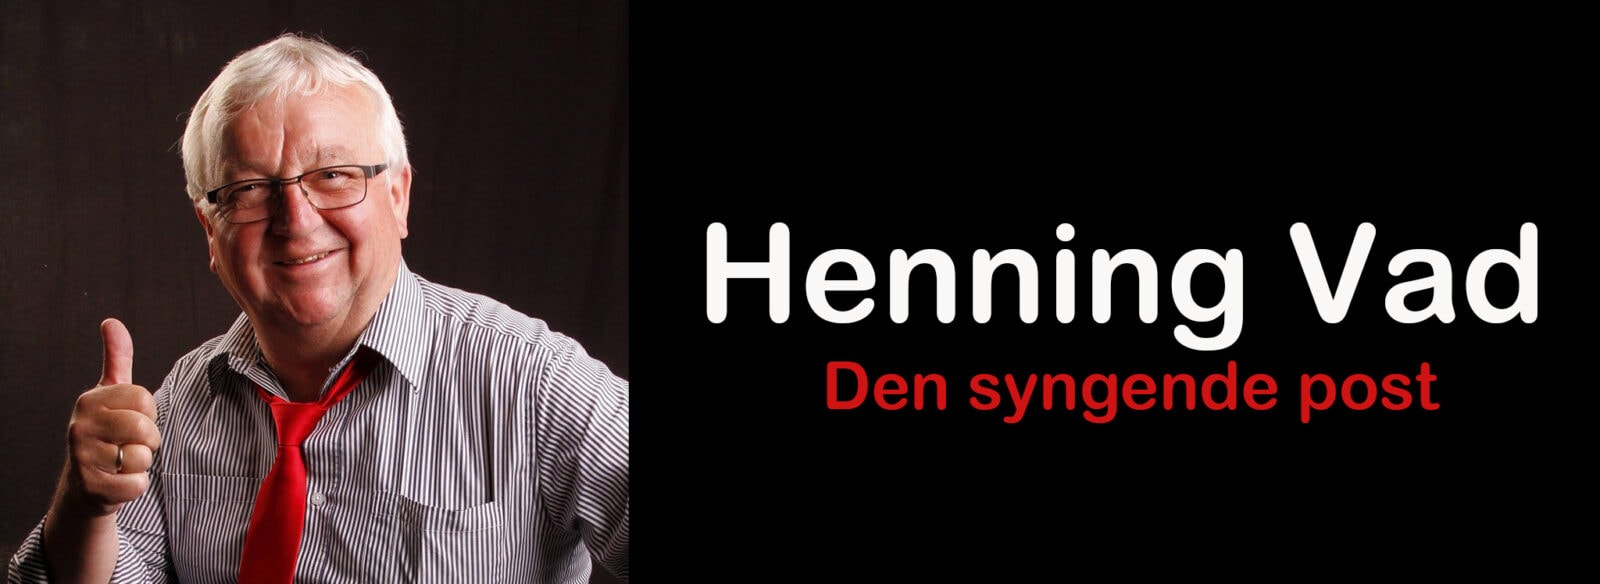 Henning Vad fra Danmark har talent coverbillede